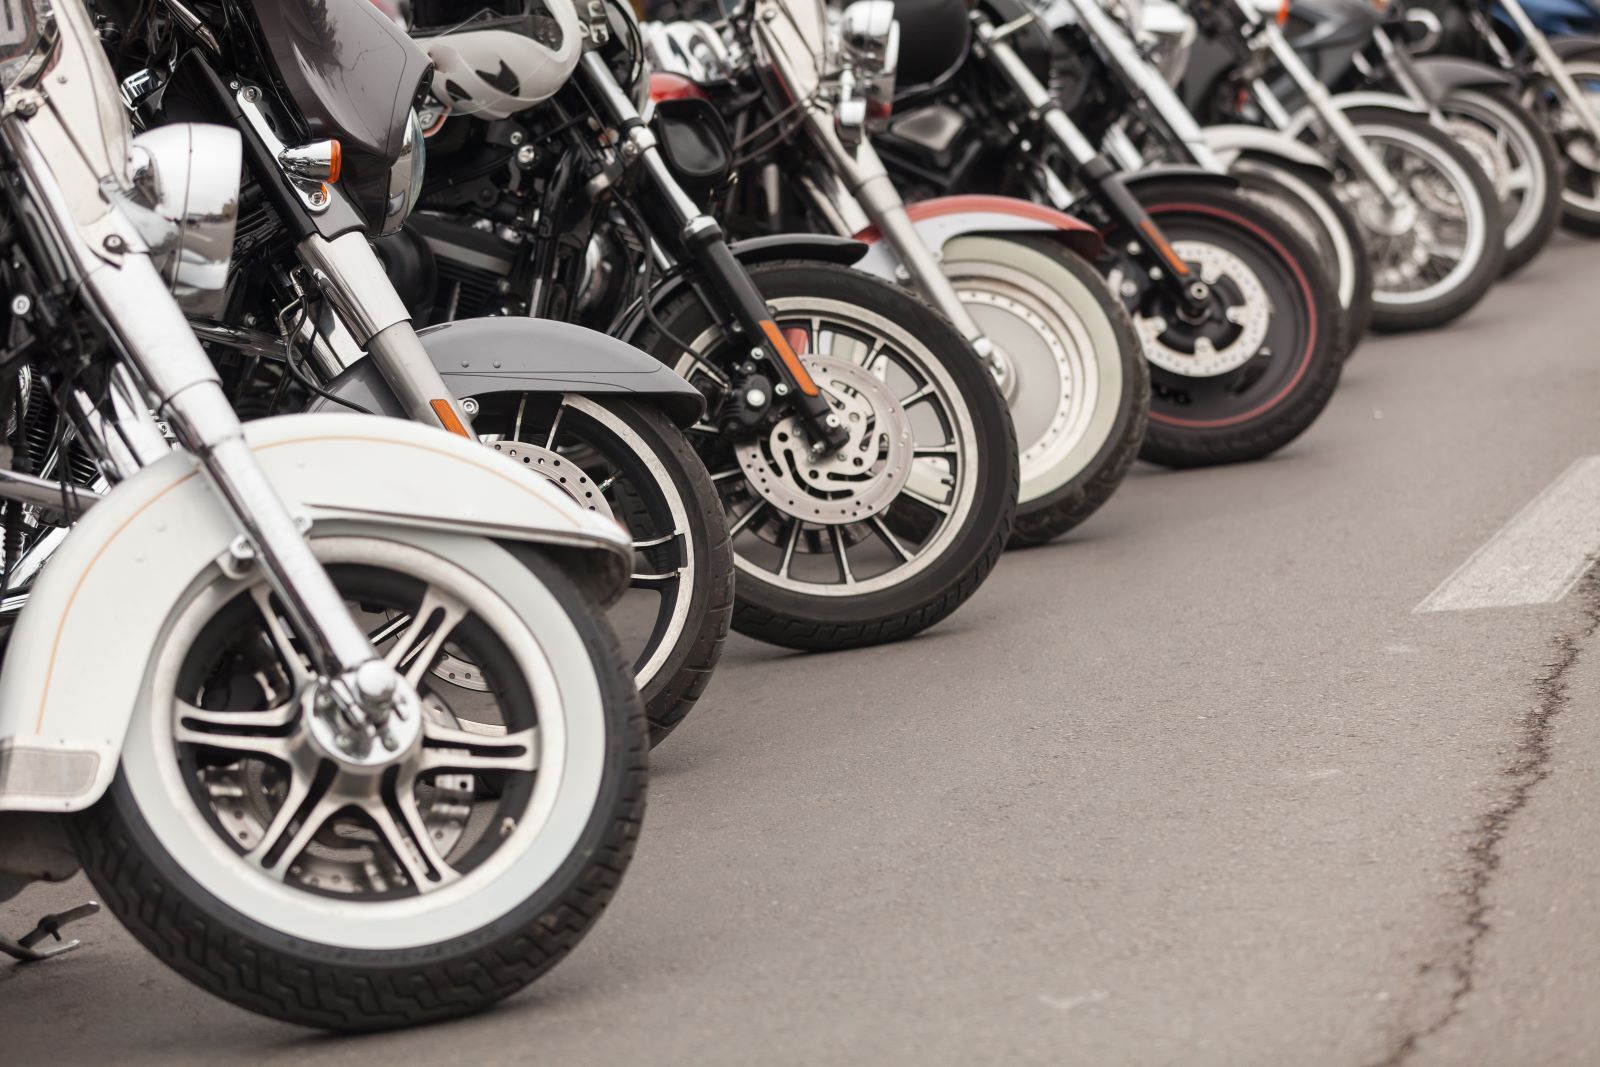 Wheels of motorcycles in line